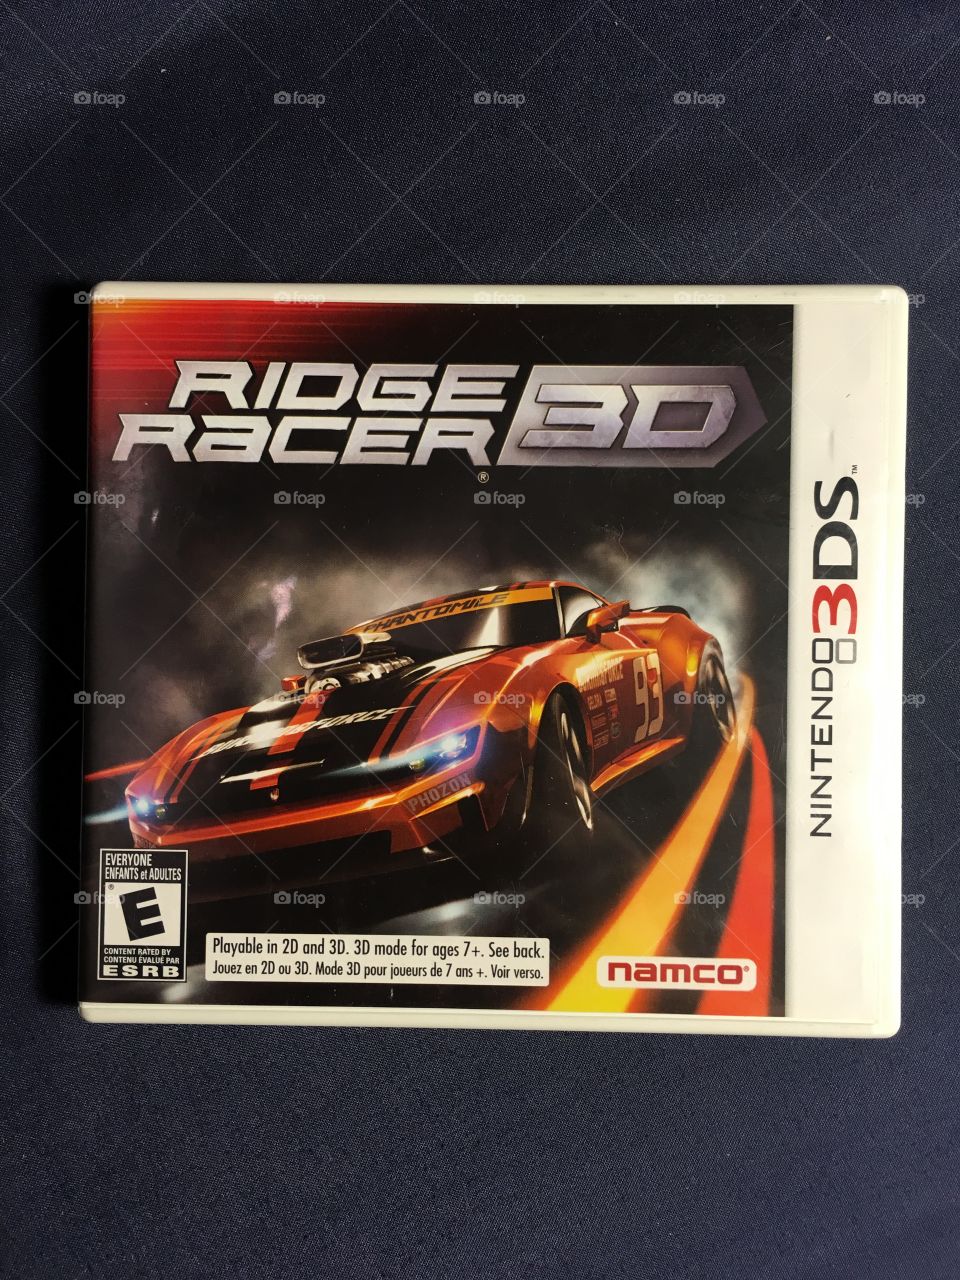 Ridge Racer 3D for the Nintendo 3ds - released 2011